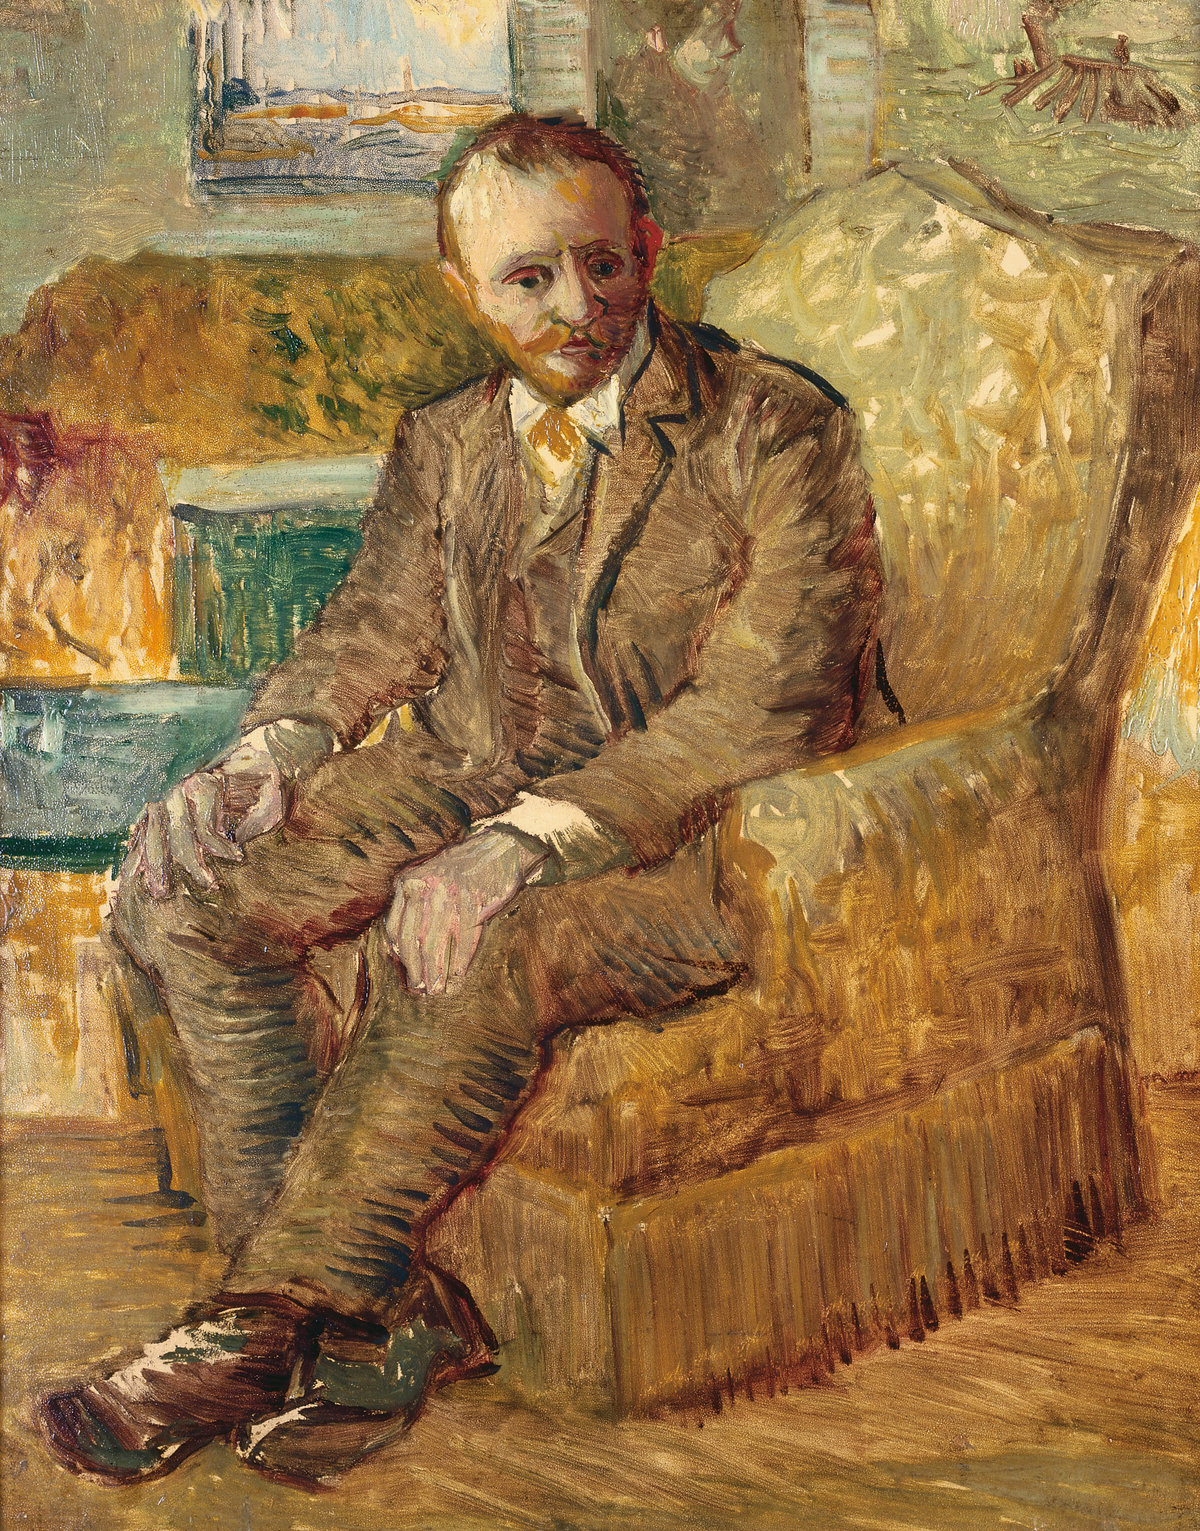 Vincent van Gogh, Portrait of Alexander Reid, c. 1887, oil on panel, 41 × 33 cm, Fred Jones Jr. Museum of Art, Norman, Oklahoma, Aaron M. and Clara Weitzenhoffer Bequest, 2000 